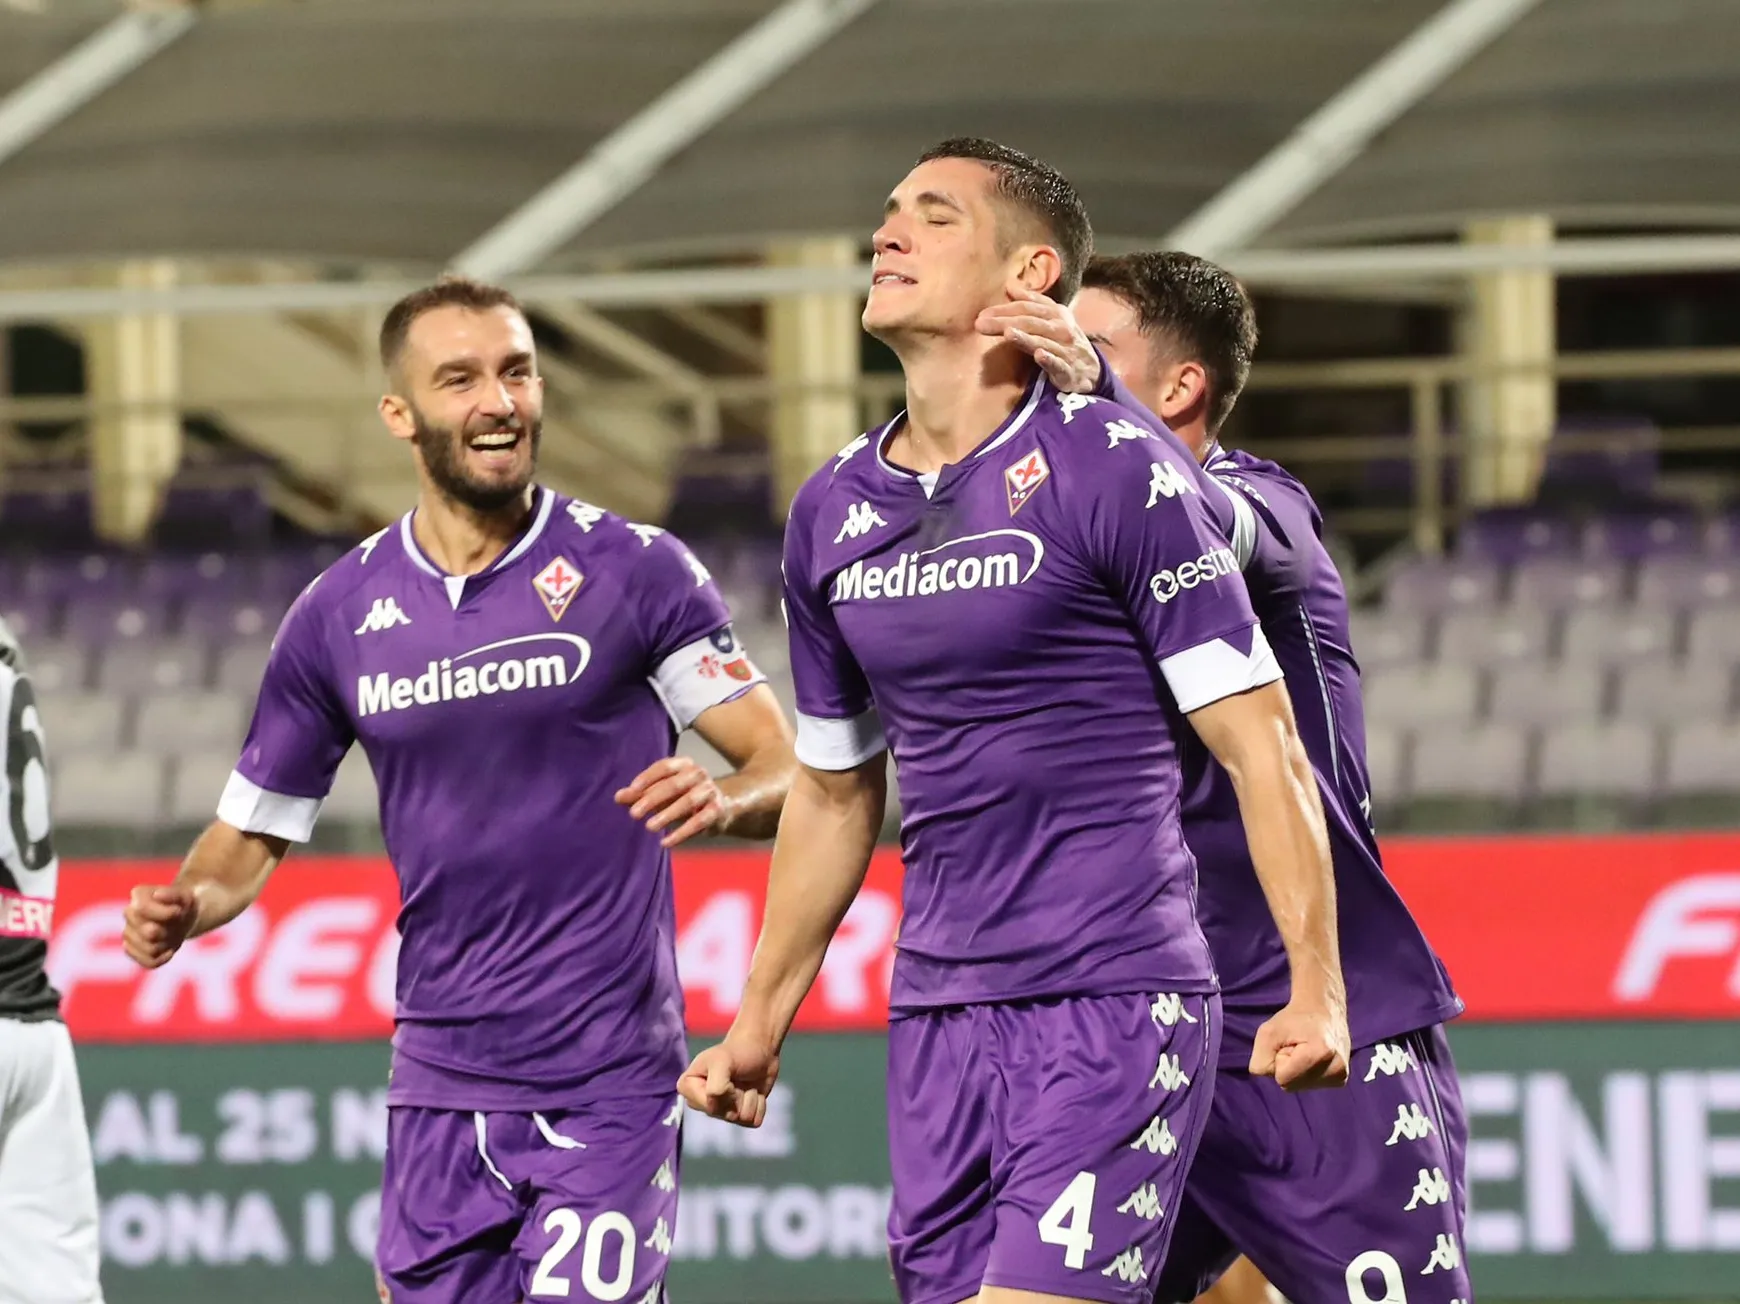 Jogadores comemoram gol da Fiorentina contra a Udinese